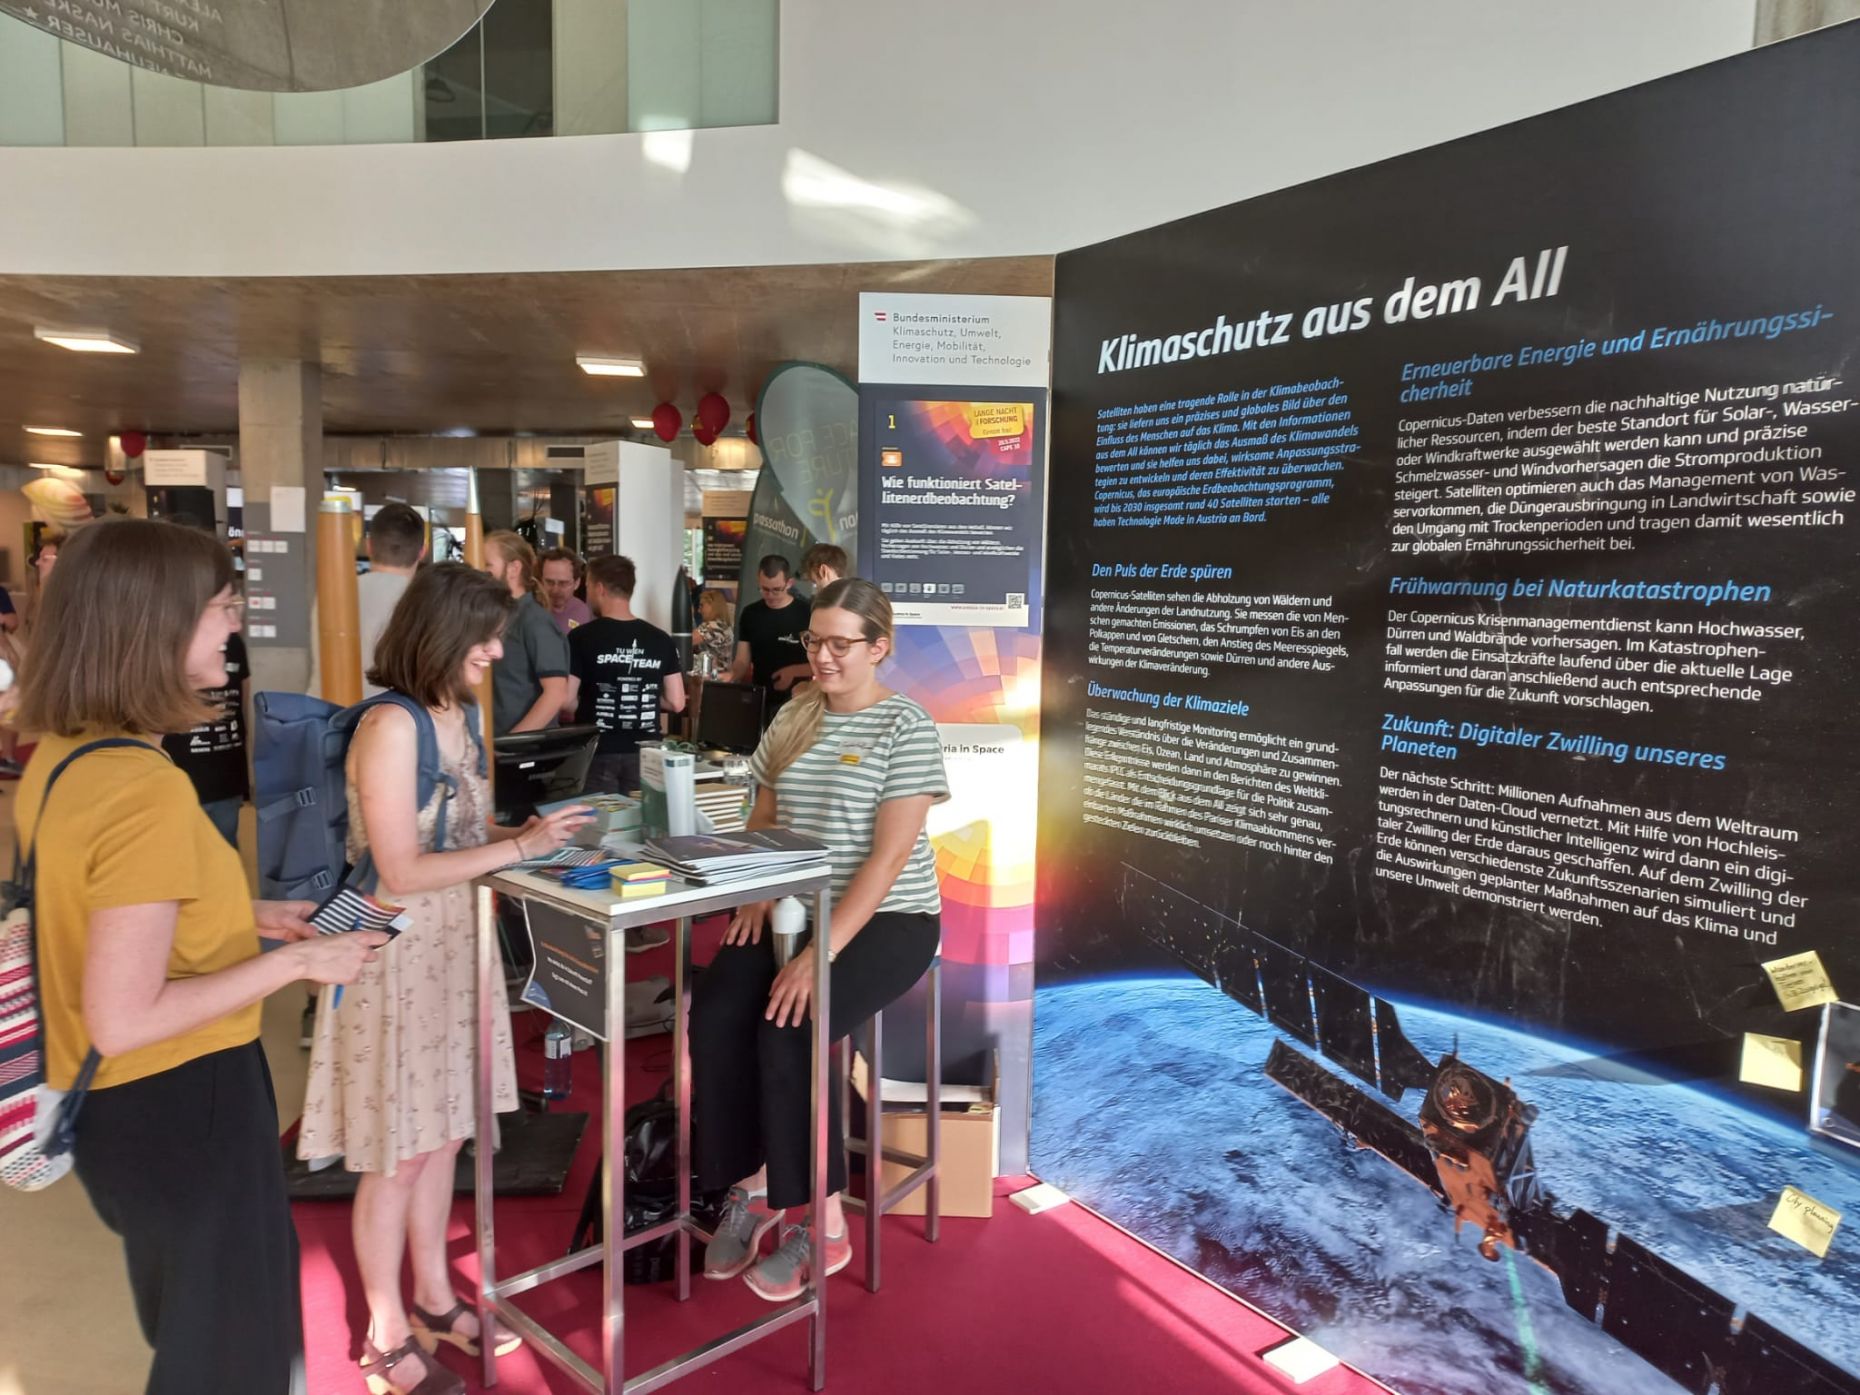 Ein Messestand, der über Erdbeobachtung und Weltraumaktivitäten in Österreich informiert. Davor stehen interessierte Besucher:innen, die aufmerksam die ausgestellten Plakate studieren.